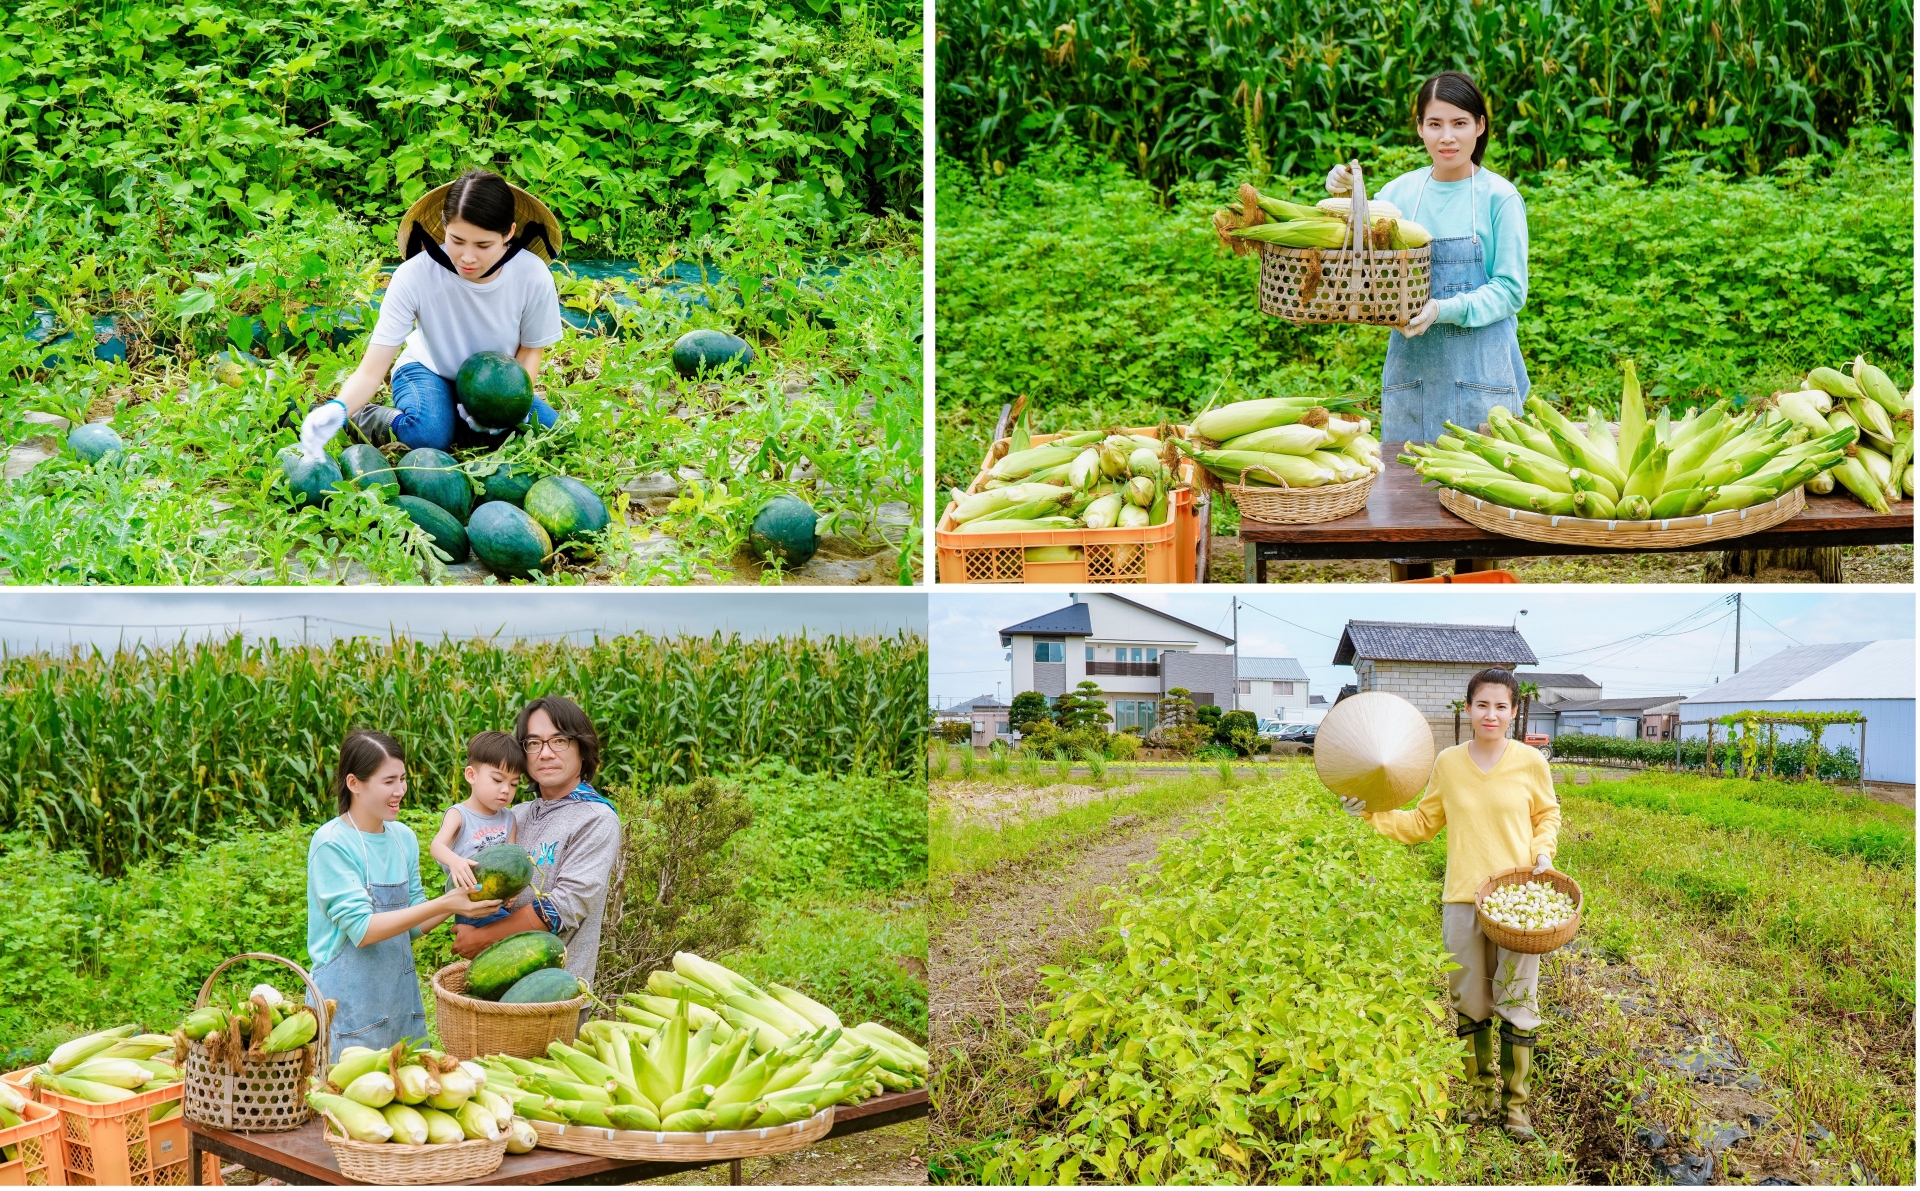 从一个从来不知道如何做农业的女孩，现在她已经成为日本真正的农民，受到家人和许多人的尊重。 这一切都归功于8X同奈省的毅力以及其对婆家的爱和乖巧的对待。